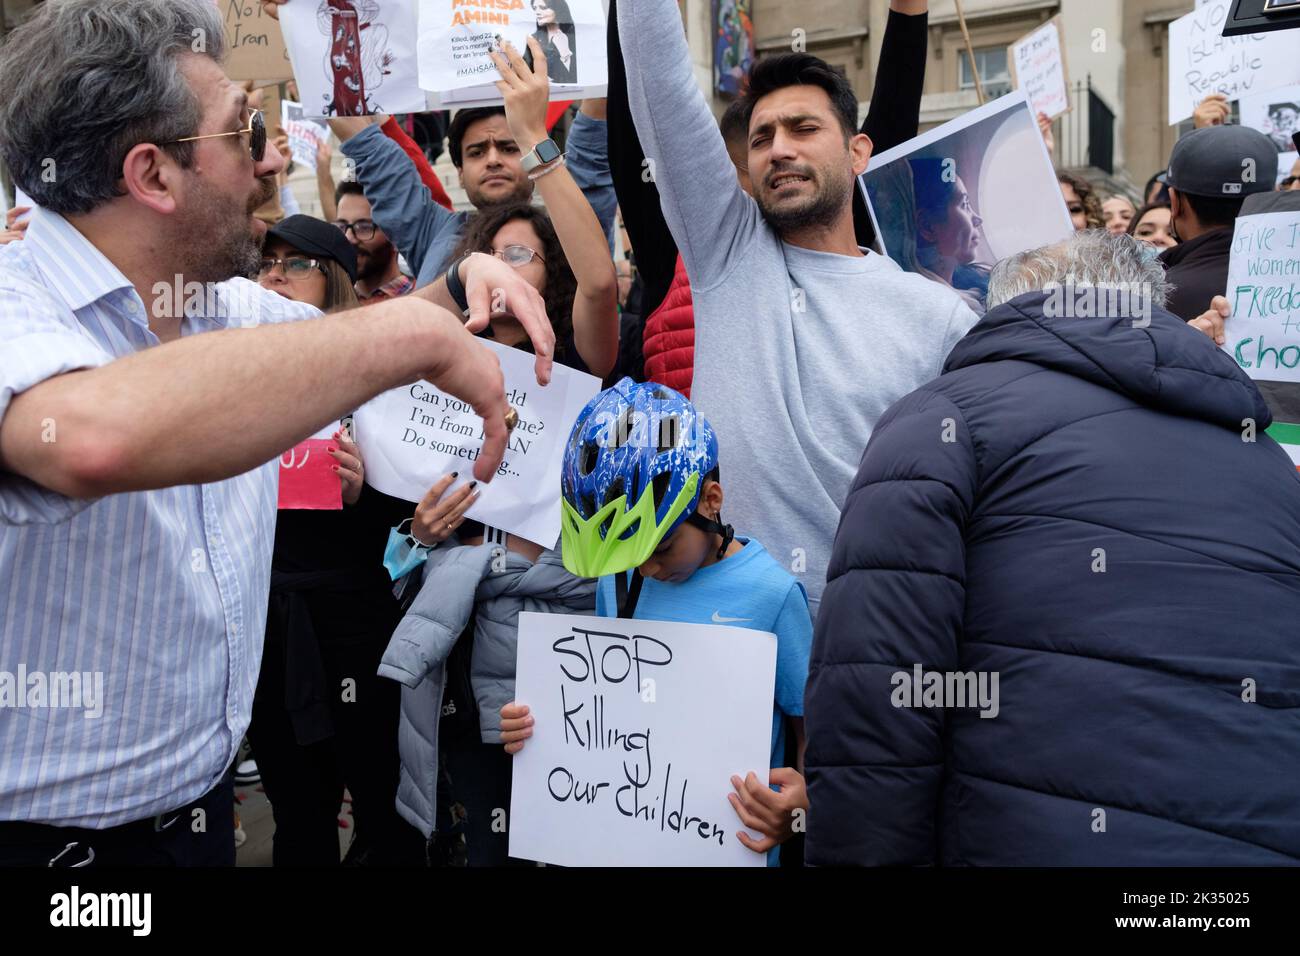 Le persone si sono riunite fuori dall'ambasciata iraniana e da Trafalgar Square per protestare contro la morte di Mahsa Amini, che è morto sotto custodia della polizia in Iran dopo essere stato detenuto per presunto non aver indossato un foulard (hijab). Foto Stock